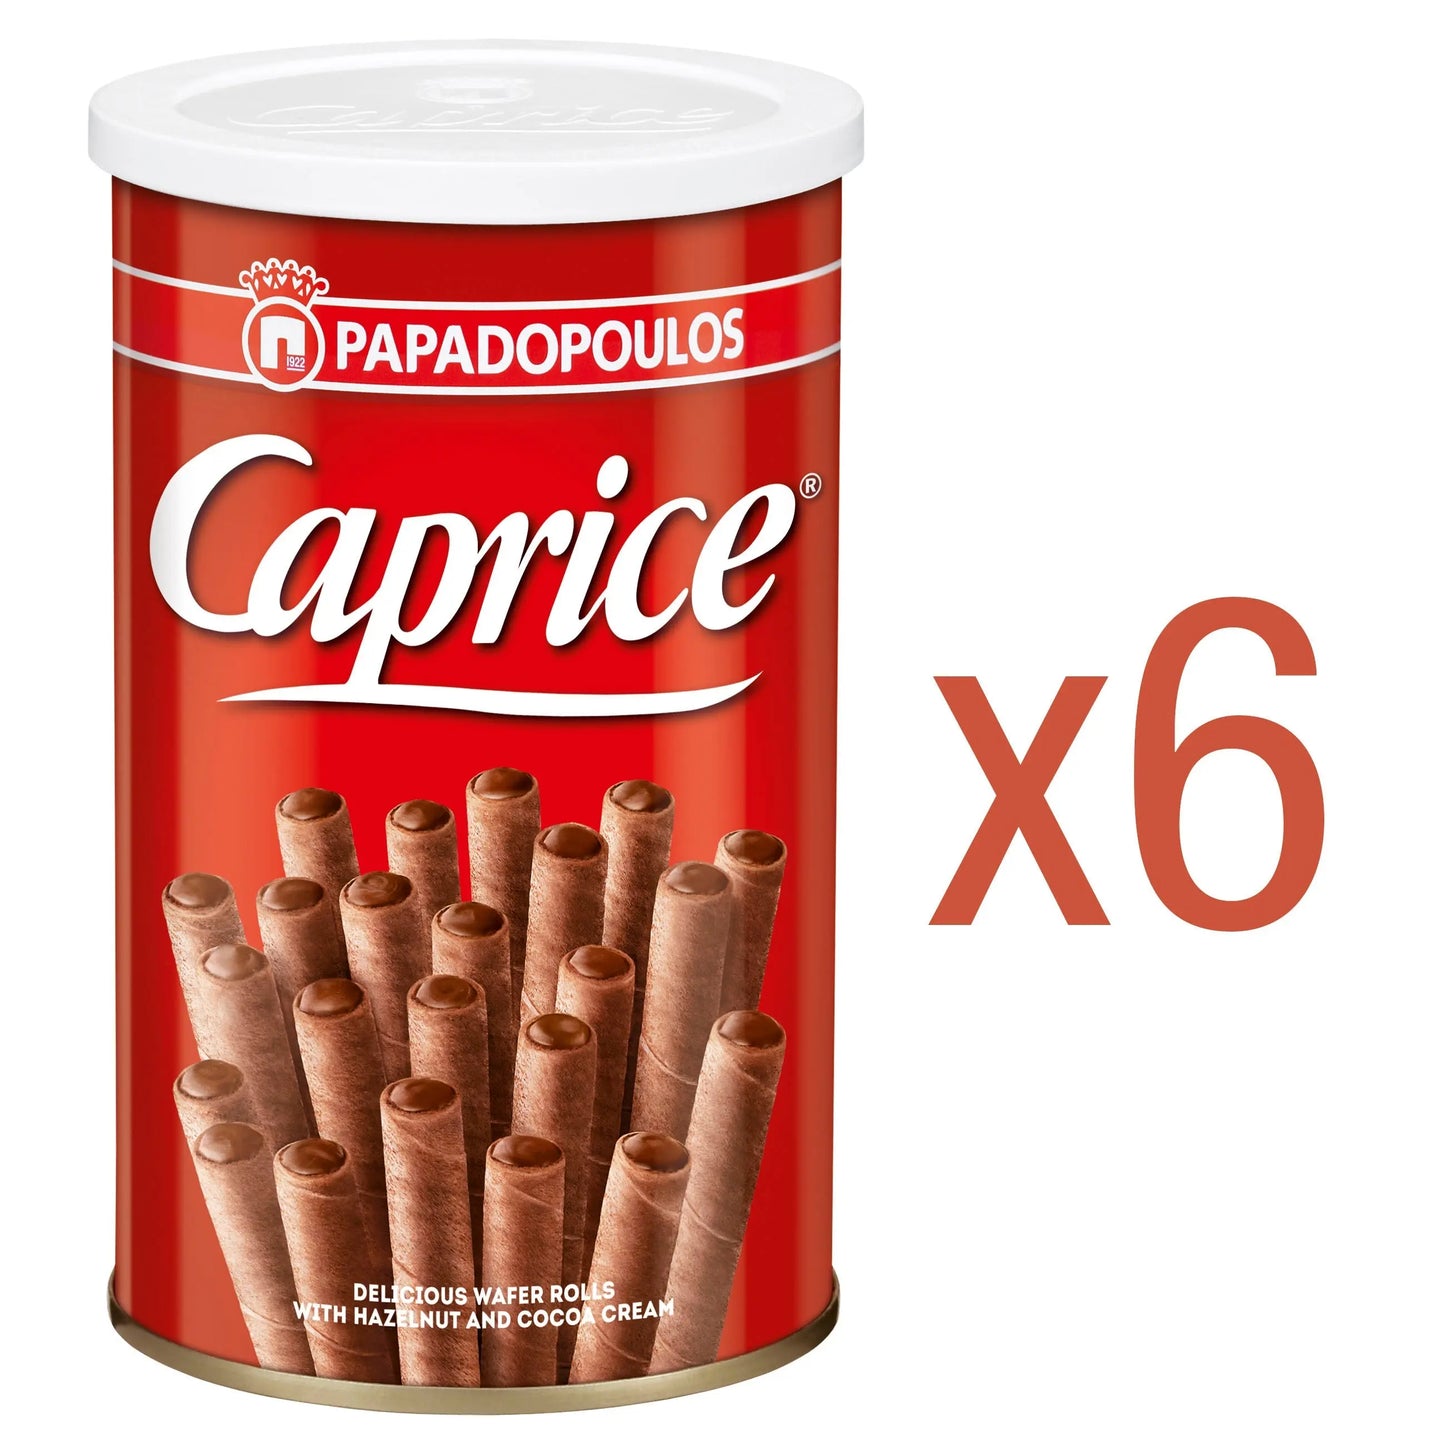 Caprice Classic 6 x 53g Caprice